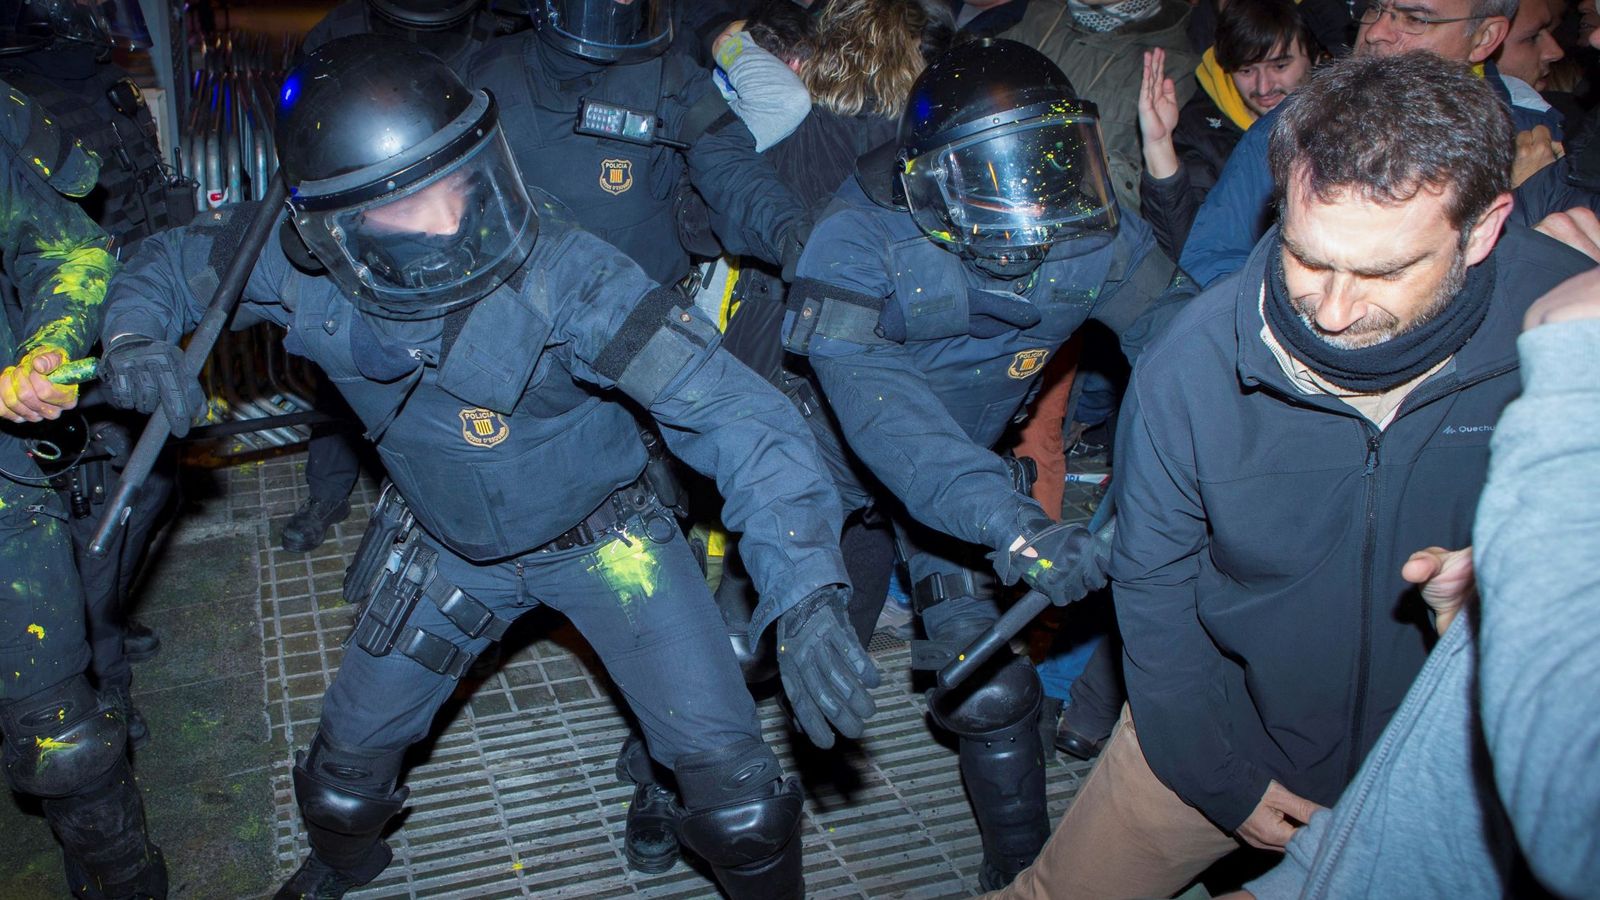 Foto: Cargas policiales en las protestas en Barcelona. (EFE)